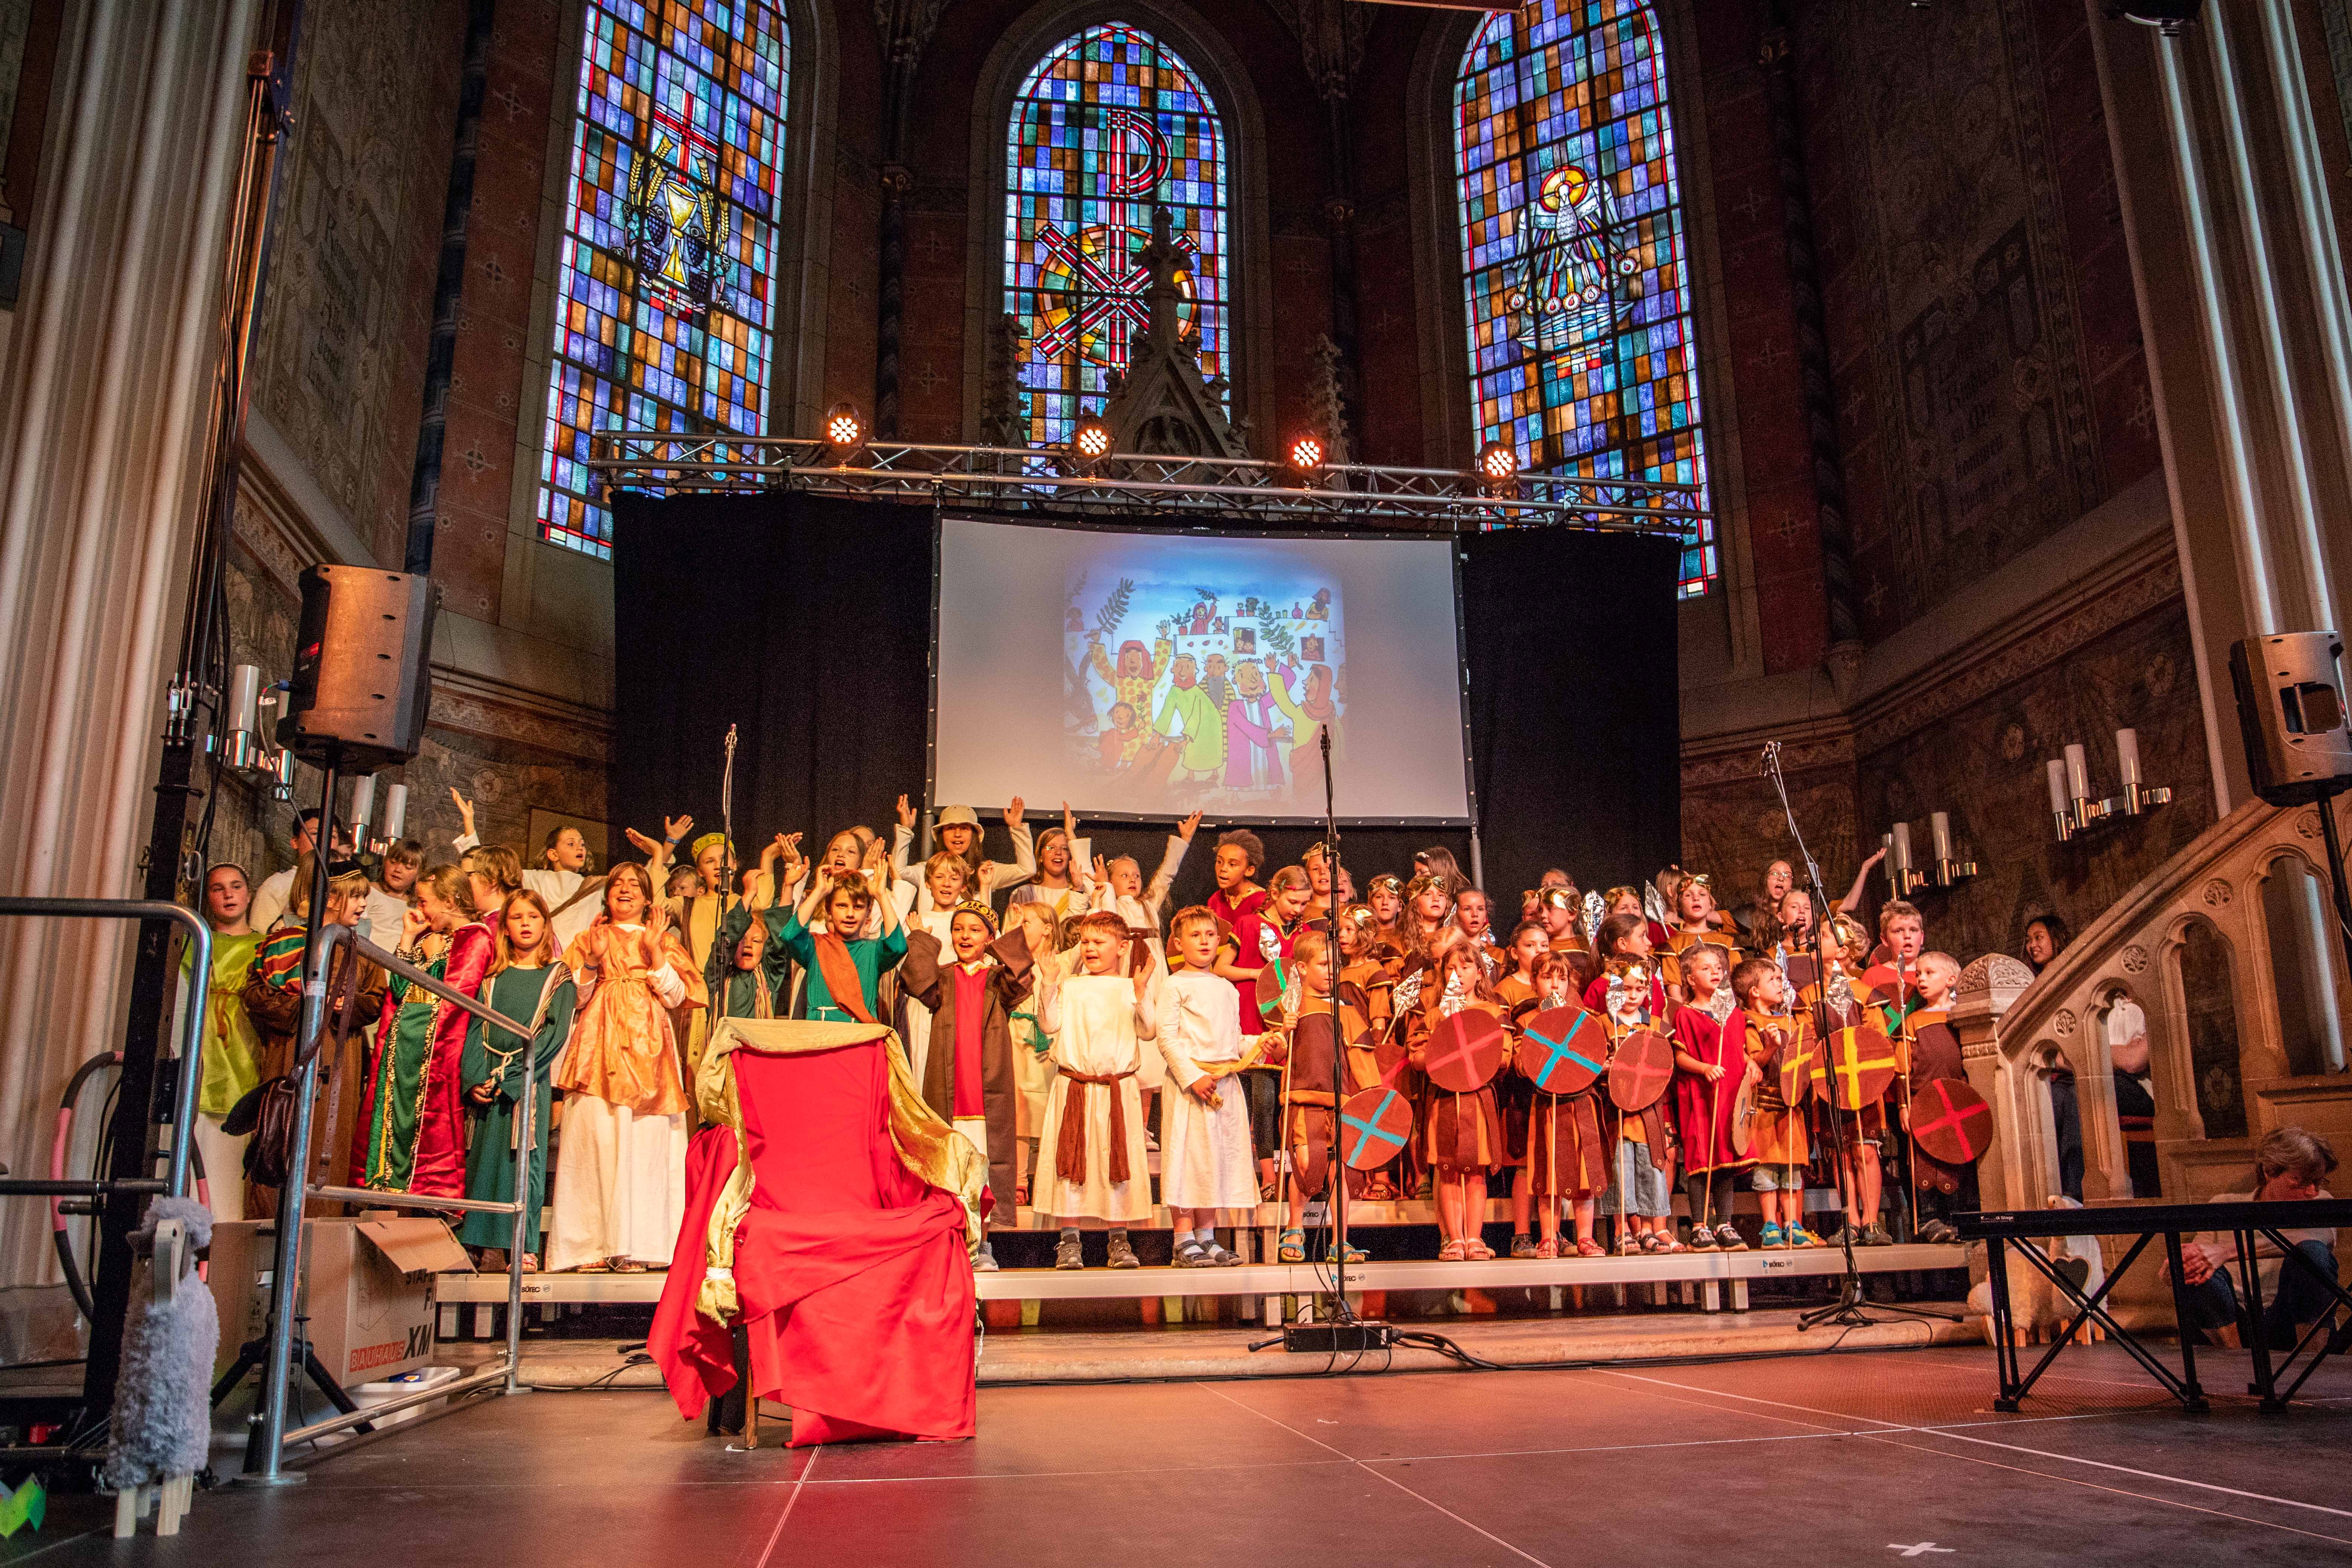 Kinderchorkonzert „Evensong“ am 11. Mai um 16 Uhr in der Liebfrauenkirche Bad Harzburg